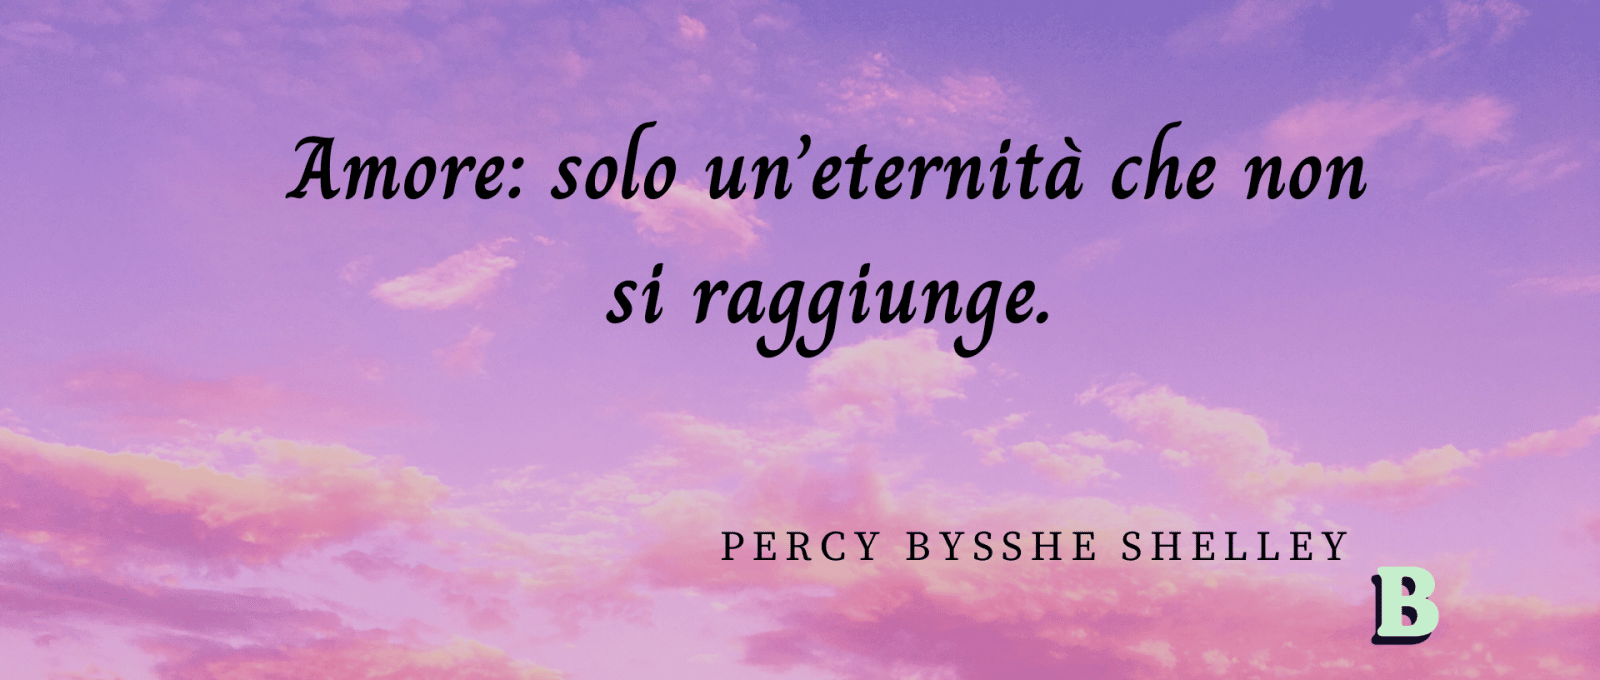 frasi Percy Bysshe Shelley